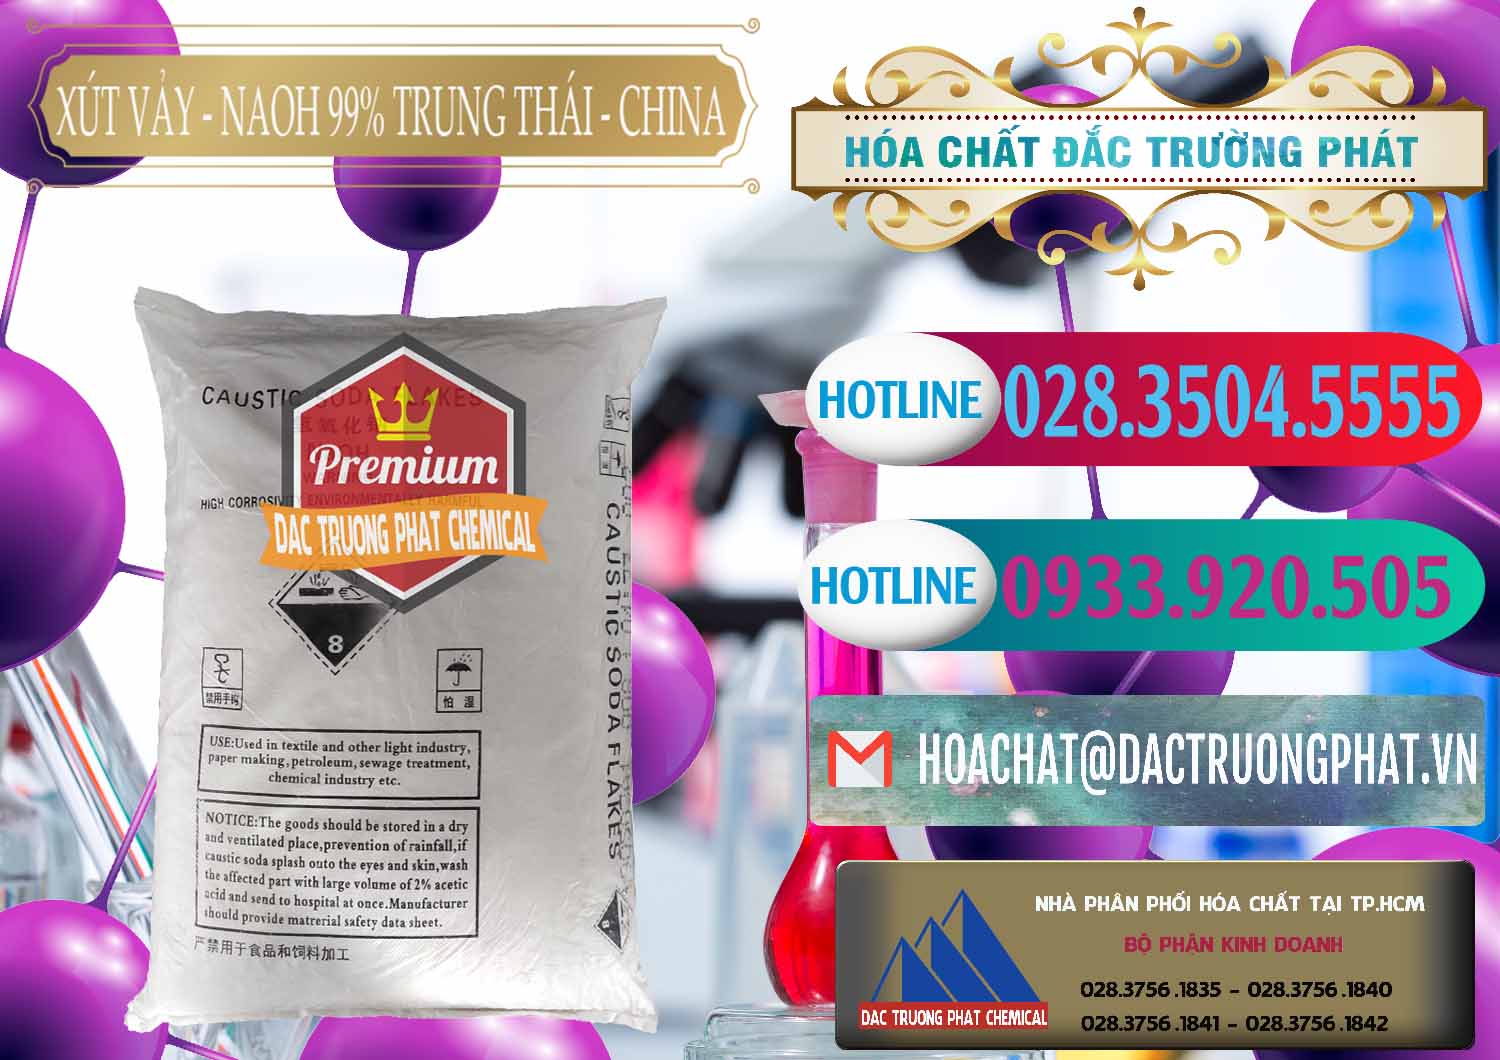 Đơn vị chuyên bán - phân phối Xút Vảy - NaOH Vảy 99% Trung Thái China Trung Quốc - 0176 - Nơi chuyên bán & phân phối hóa chất tại TP.HCM - truongphat.vn